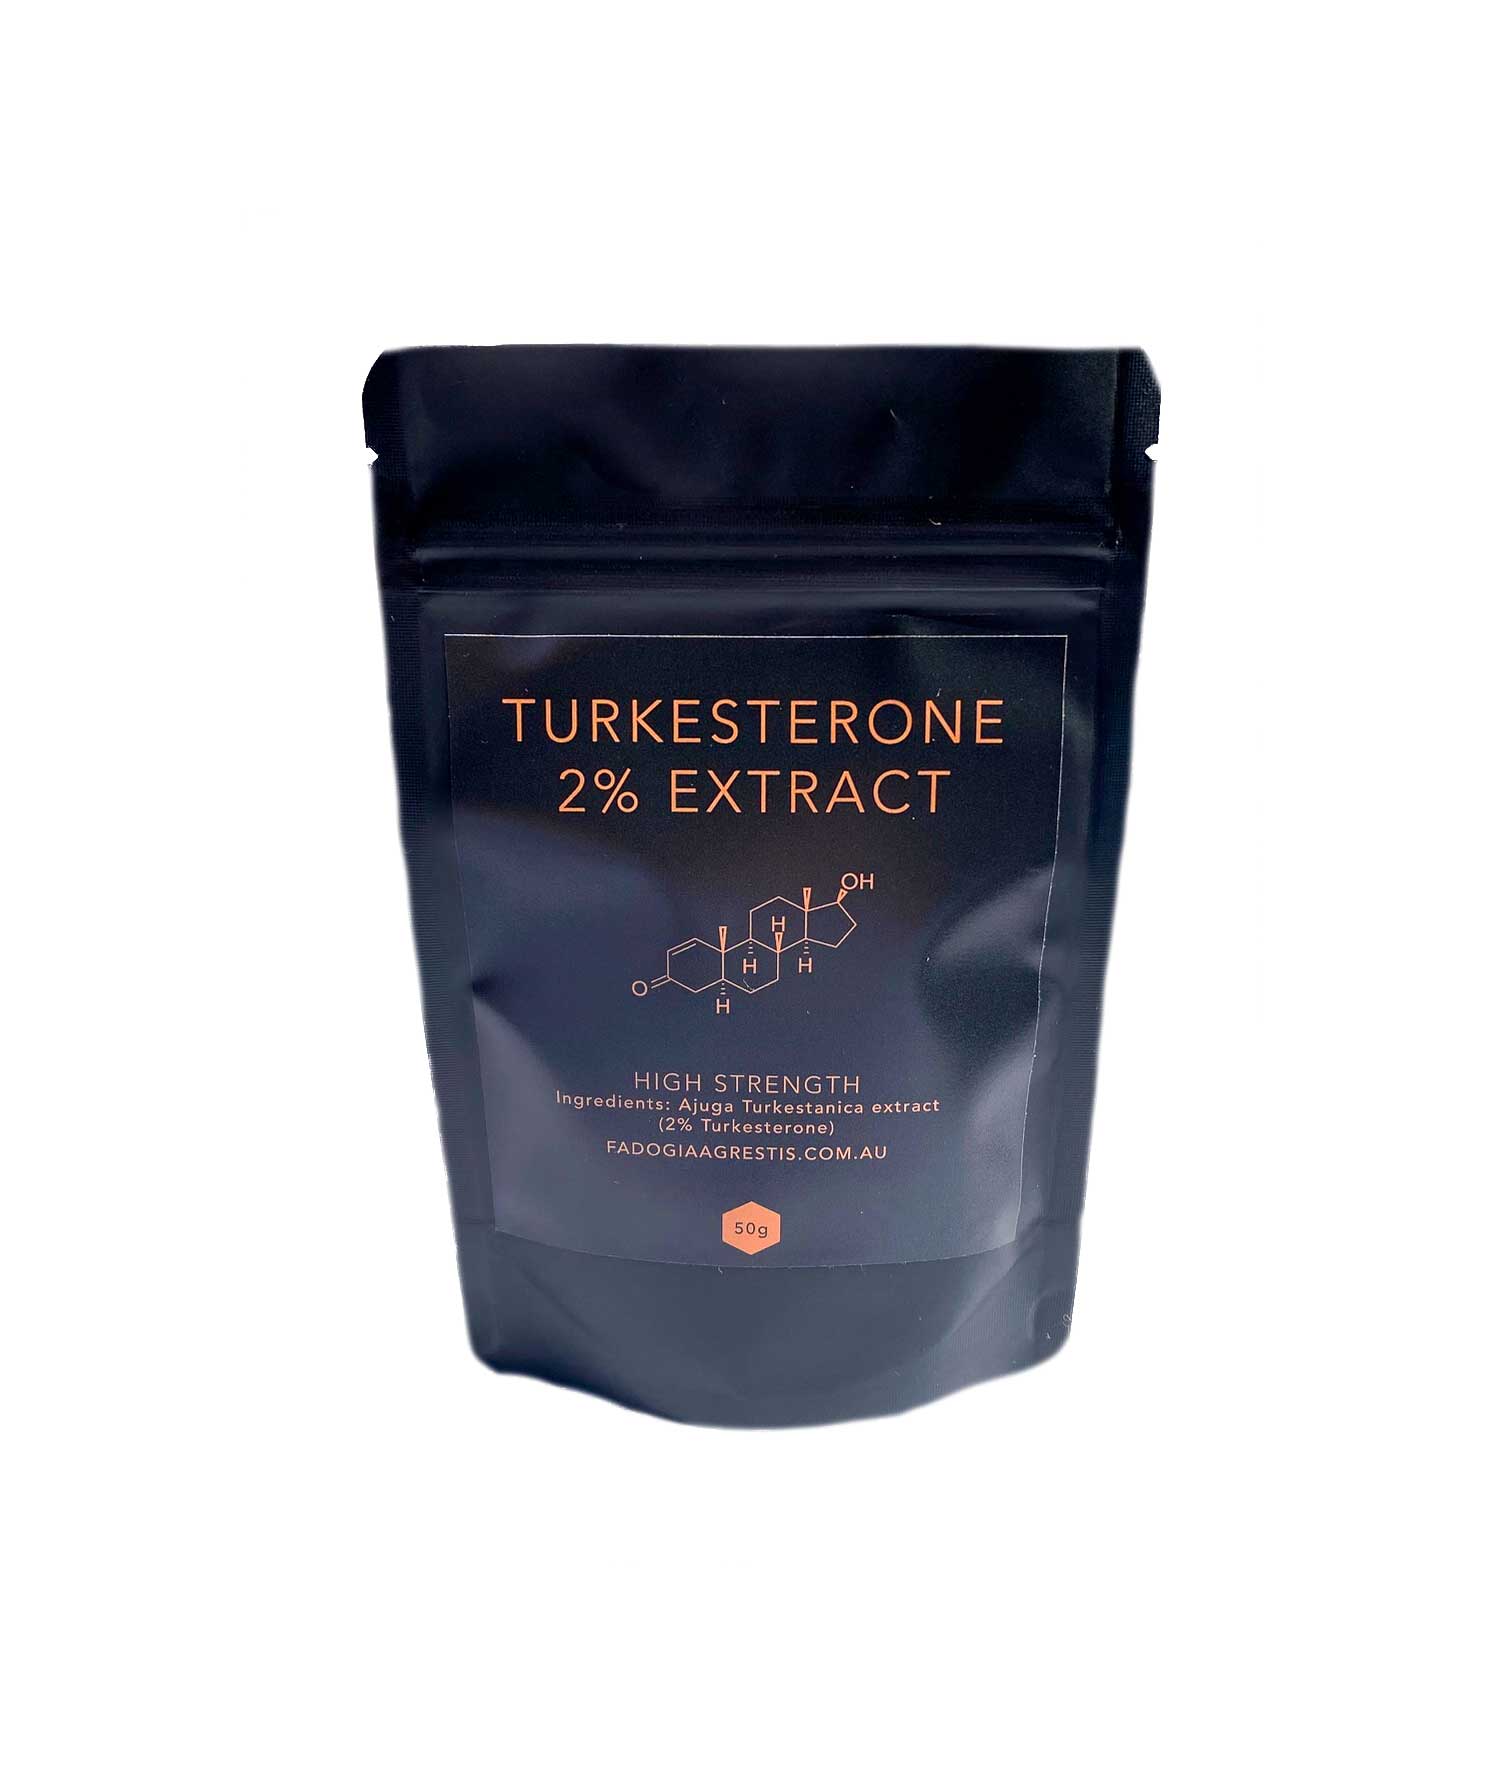 Turkesterone benefits. Turkesterone for men. Turkesterone serving size. Turkesterone Body Building.